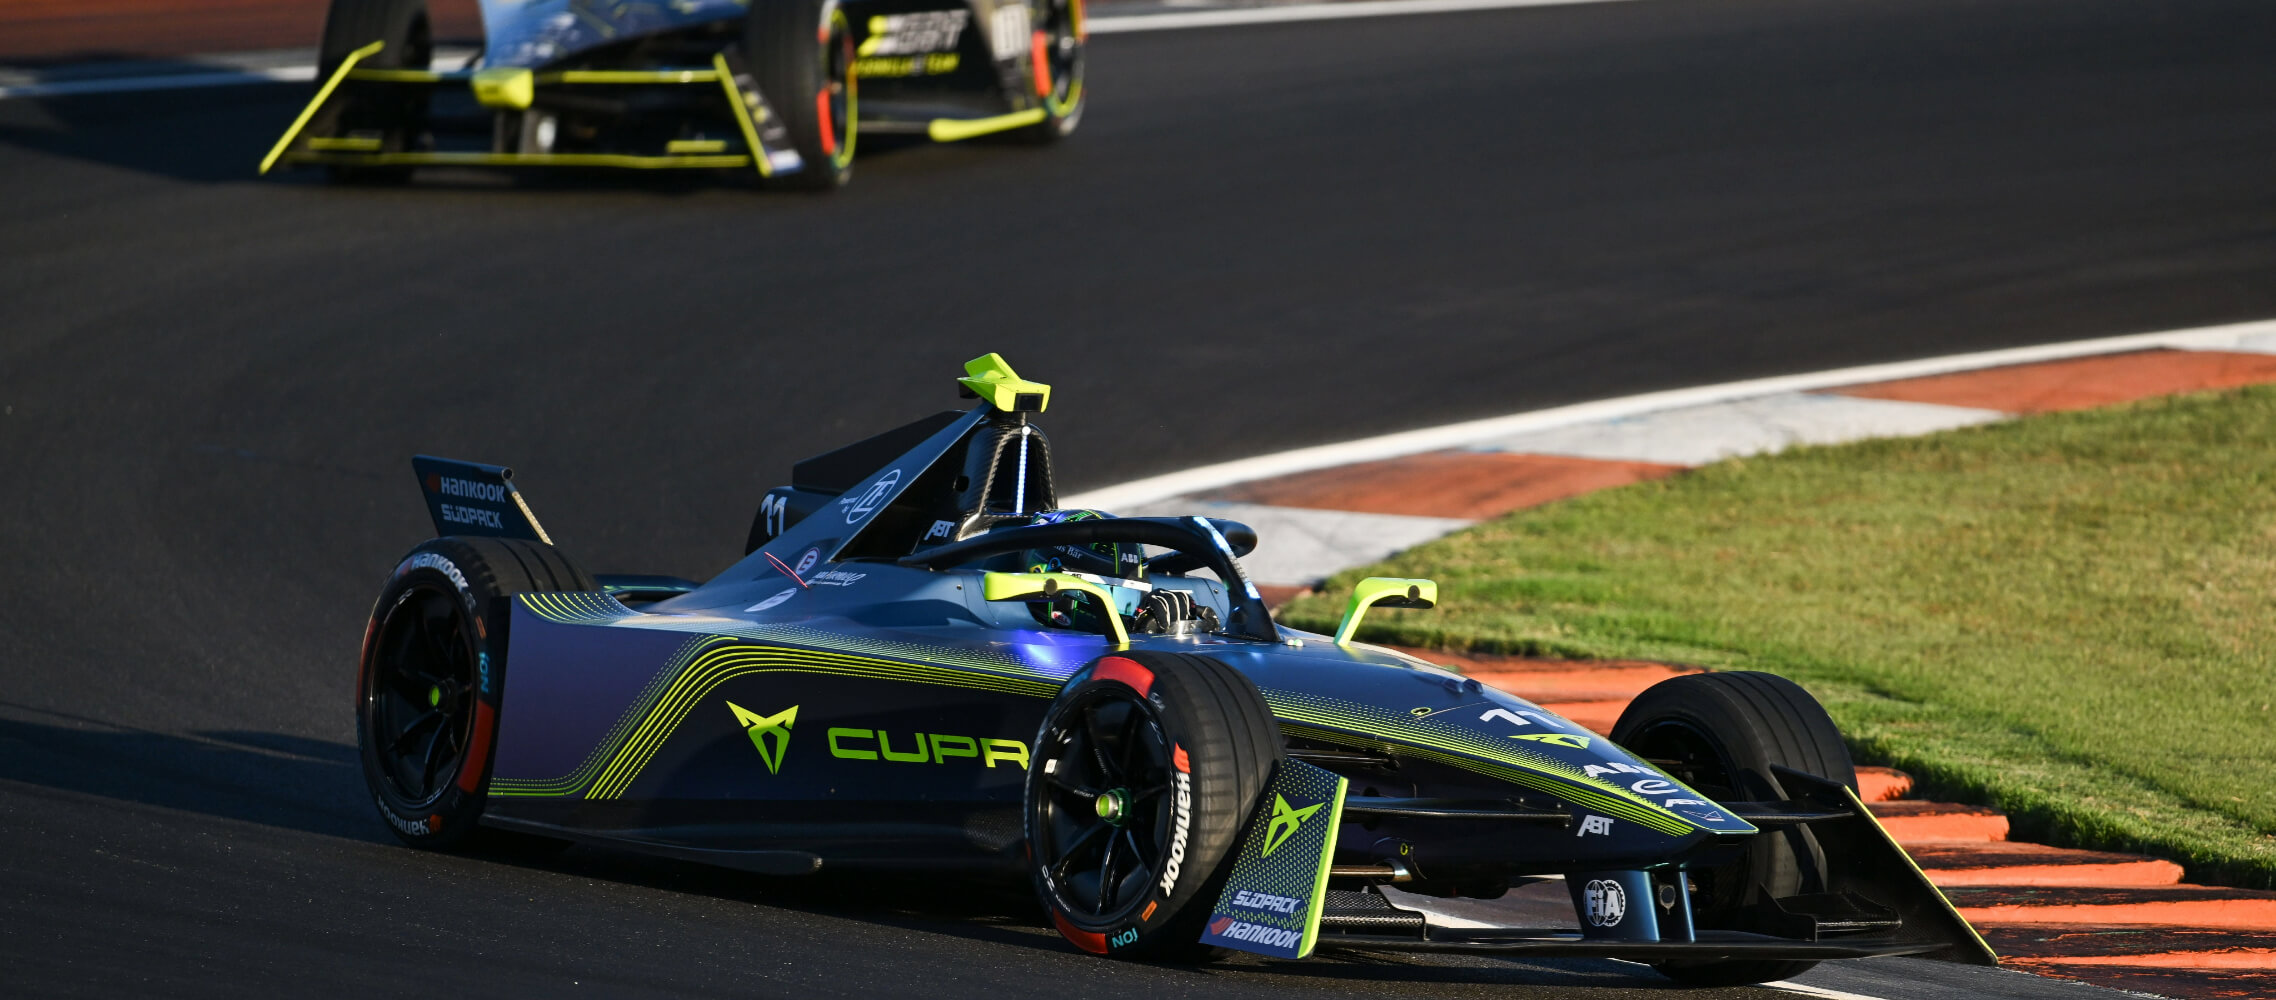 The CUPRA Formula E on a racetrack